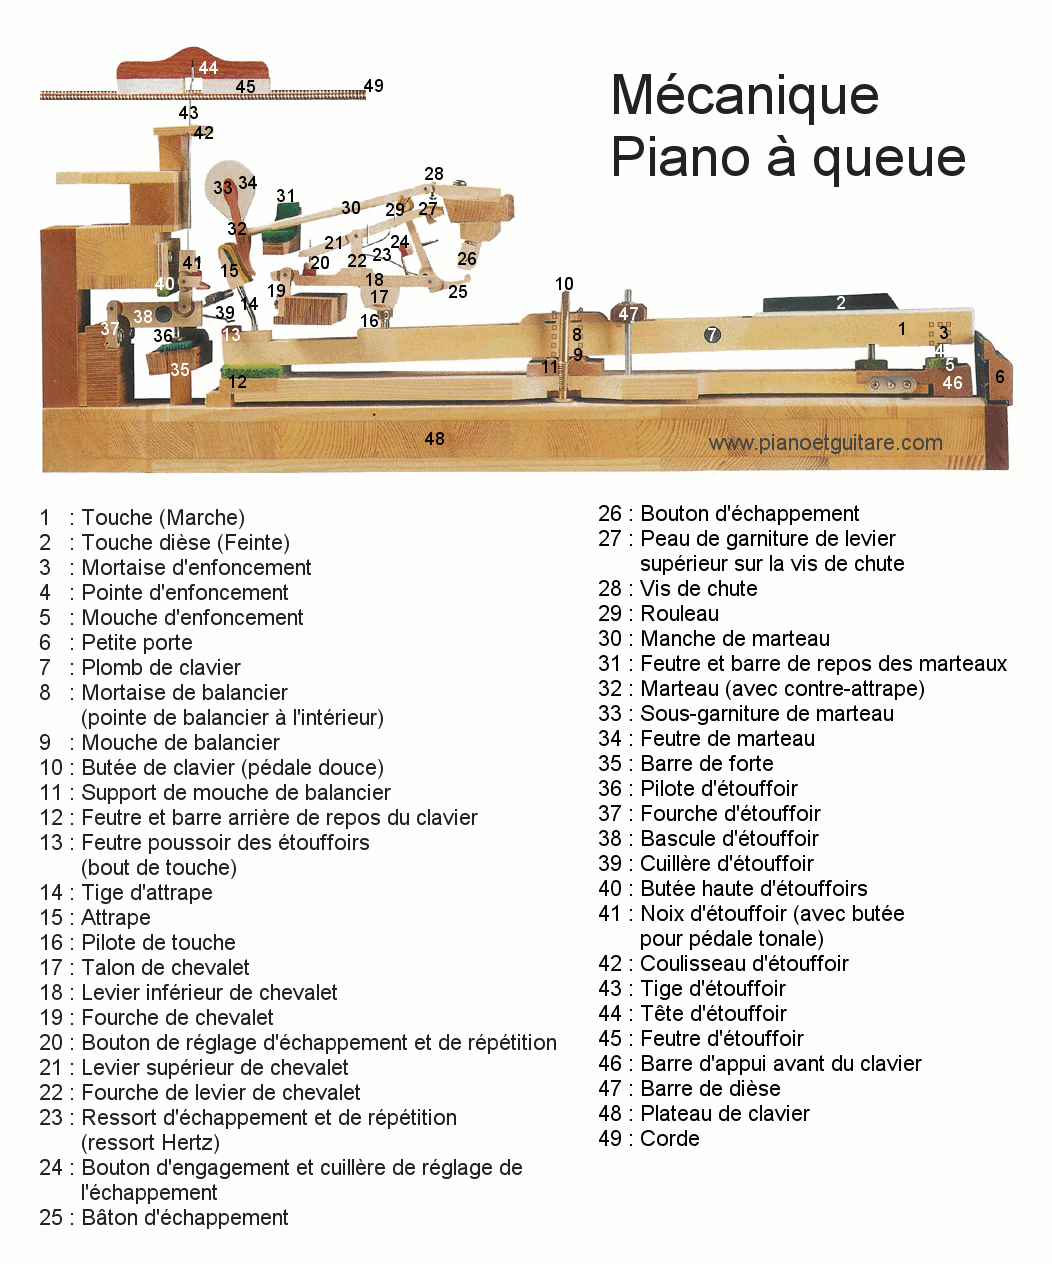 Anatomie d'un piano droit et nomenclature